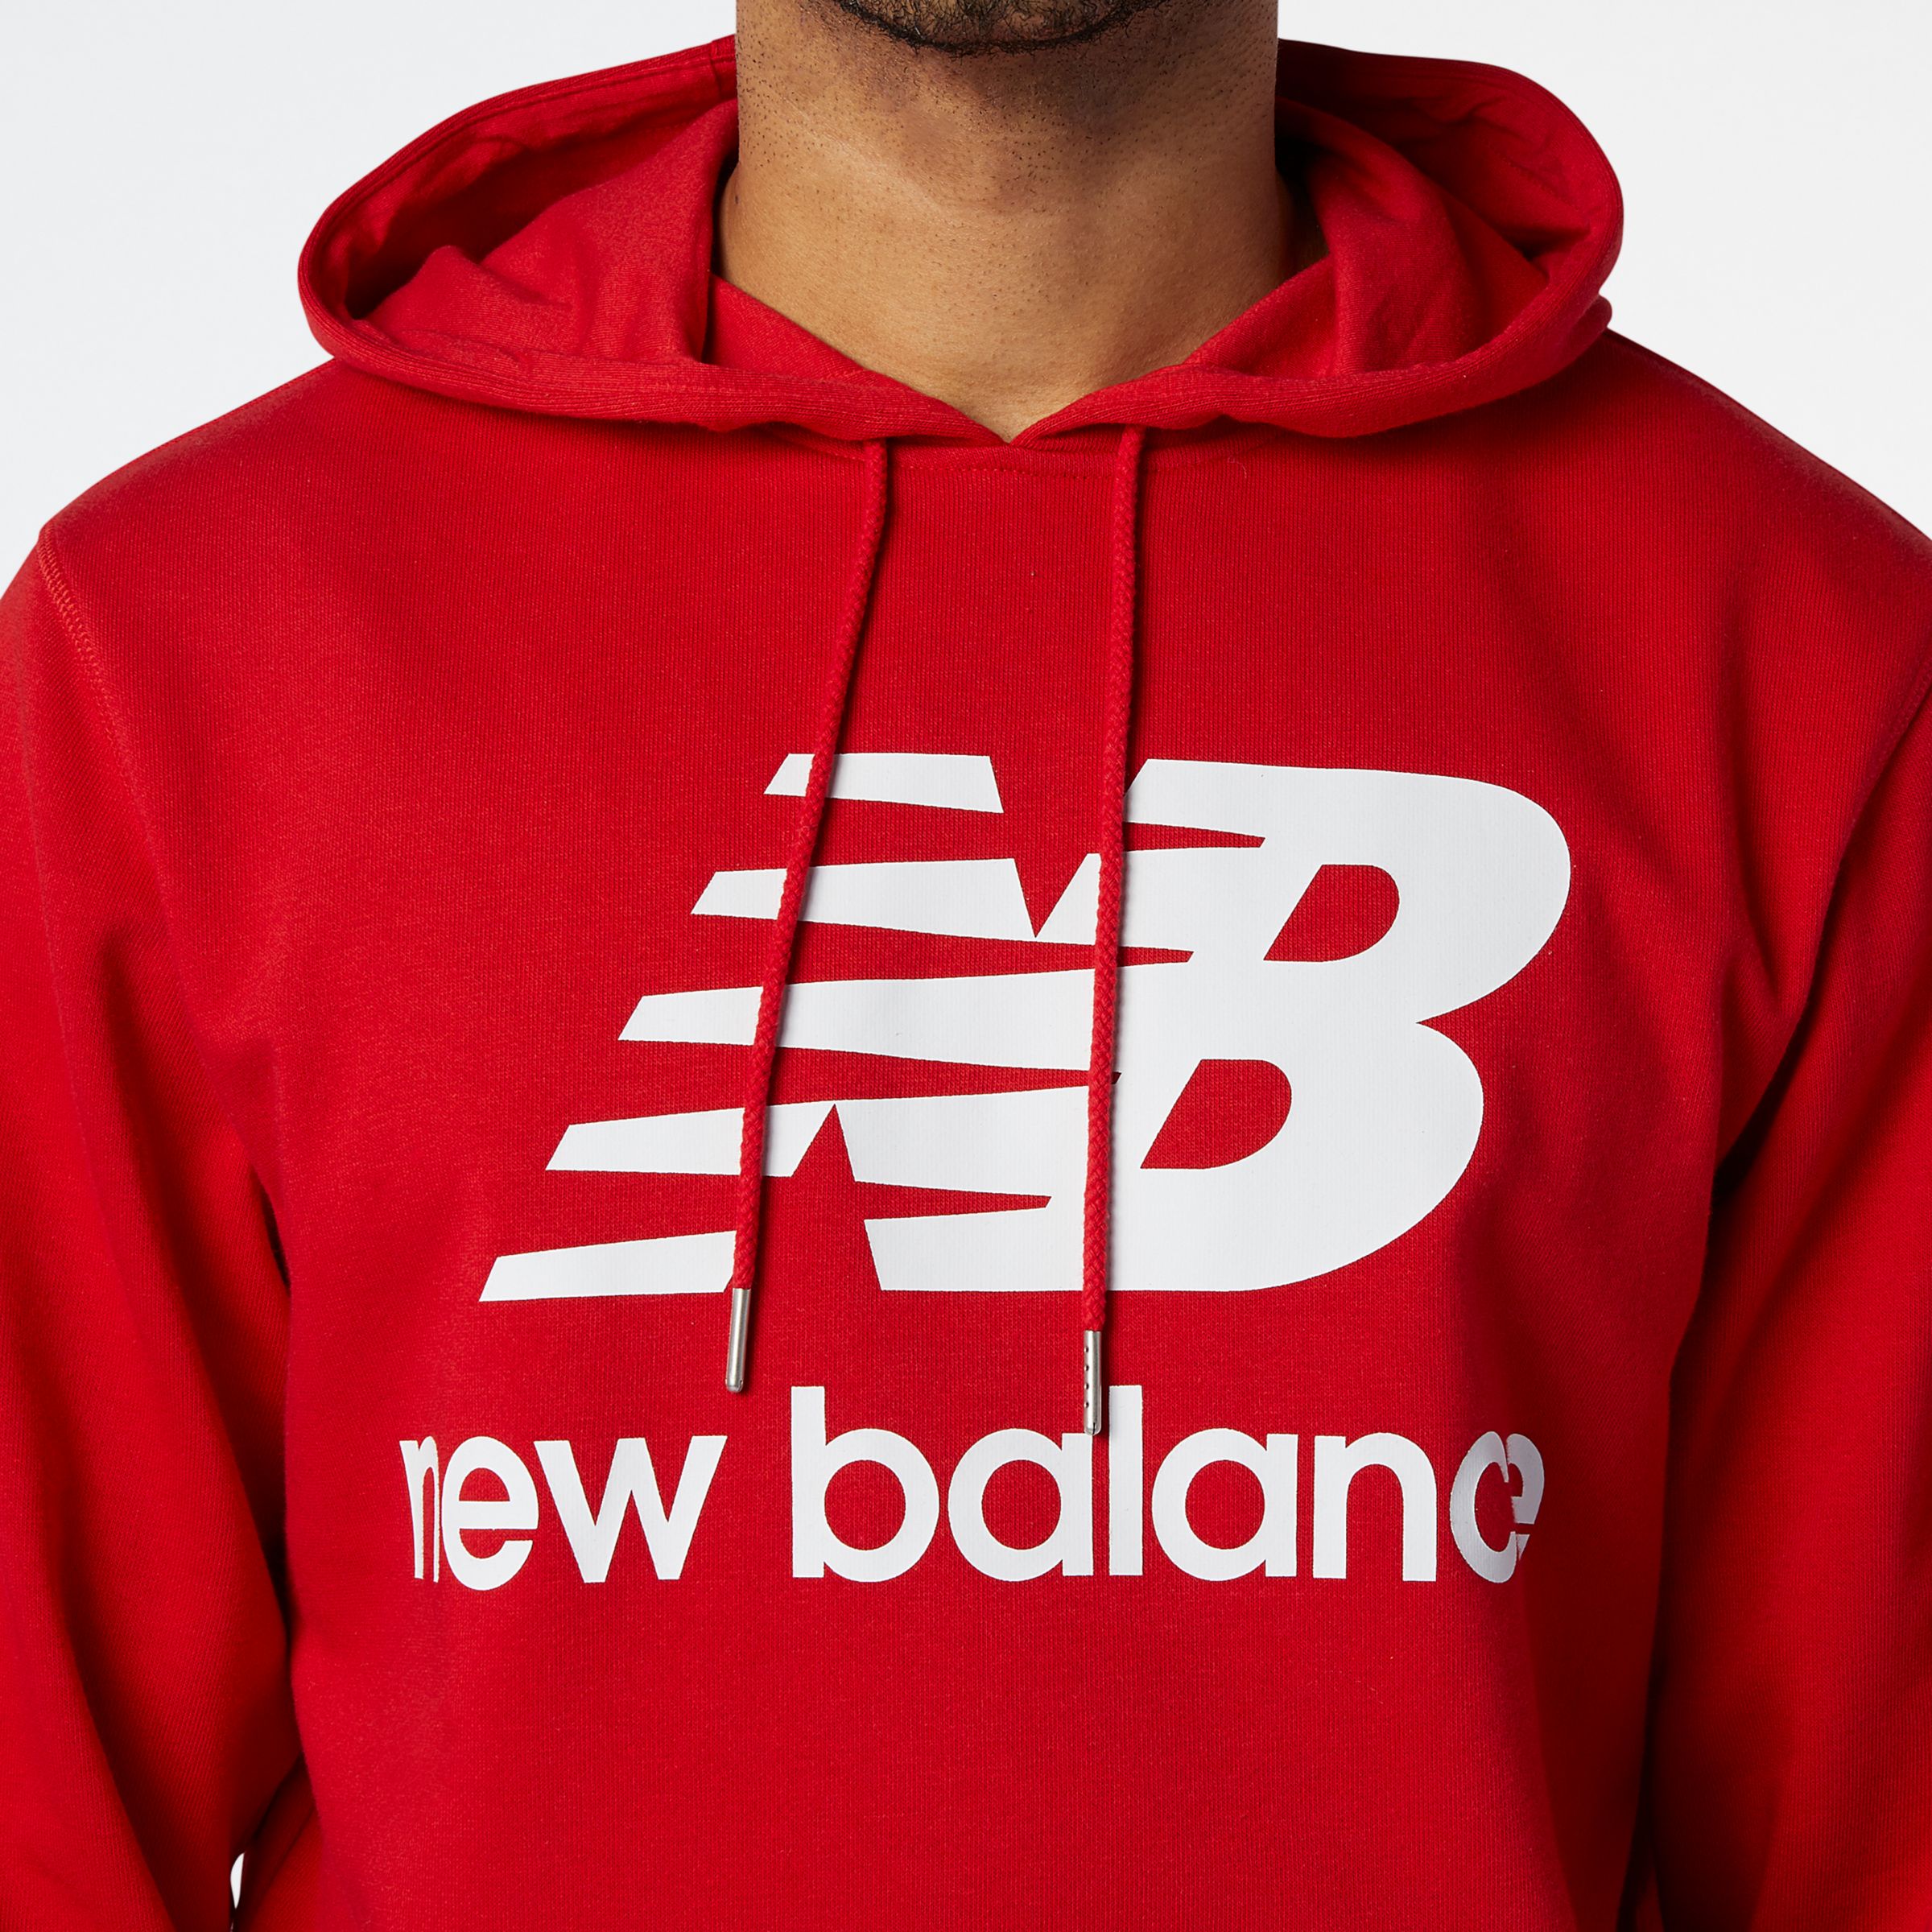 essentials nb logo hoodie